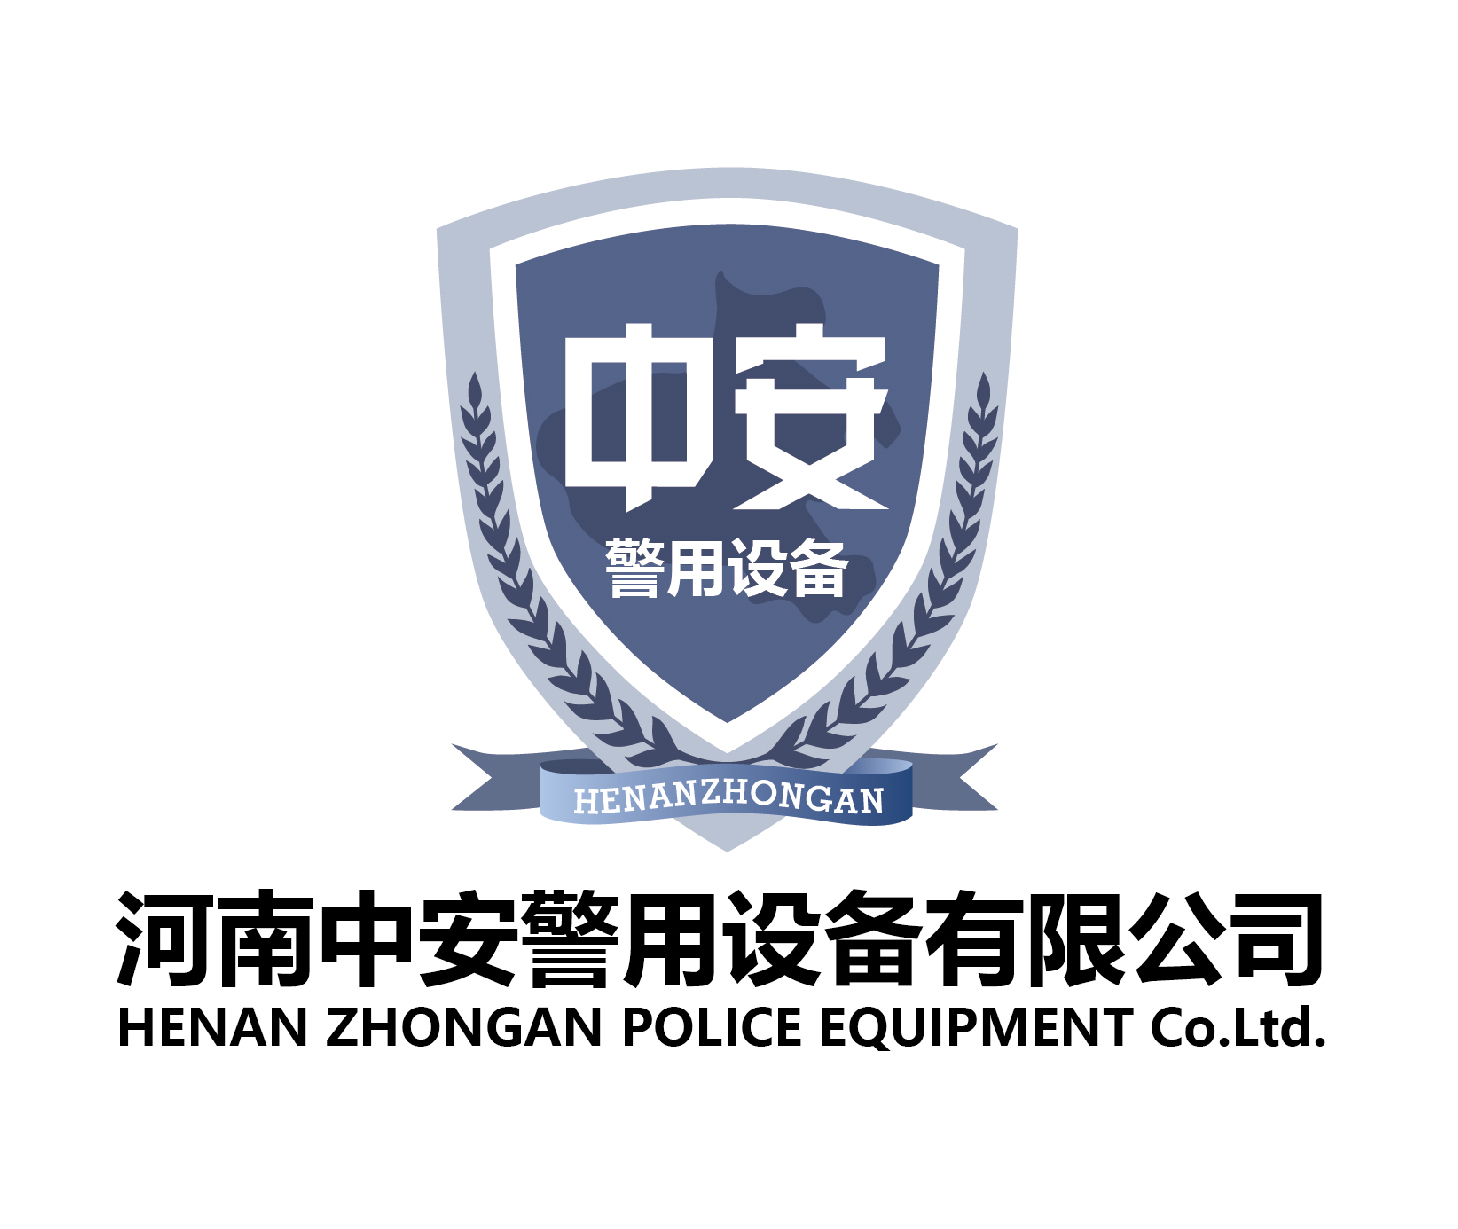 中安警用设备有限公司logo